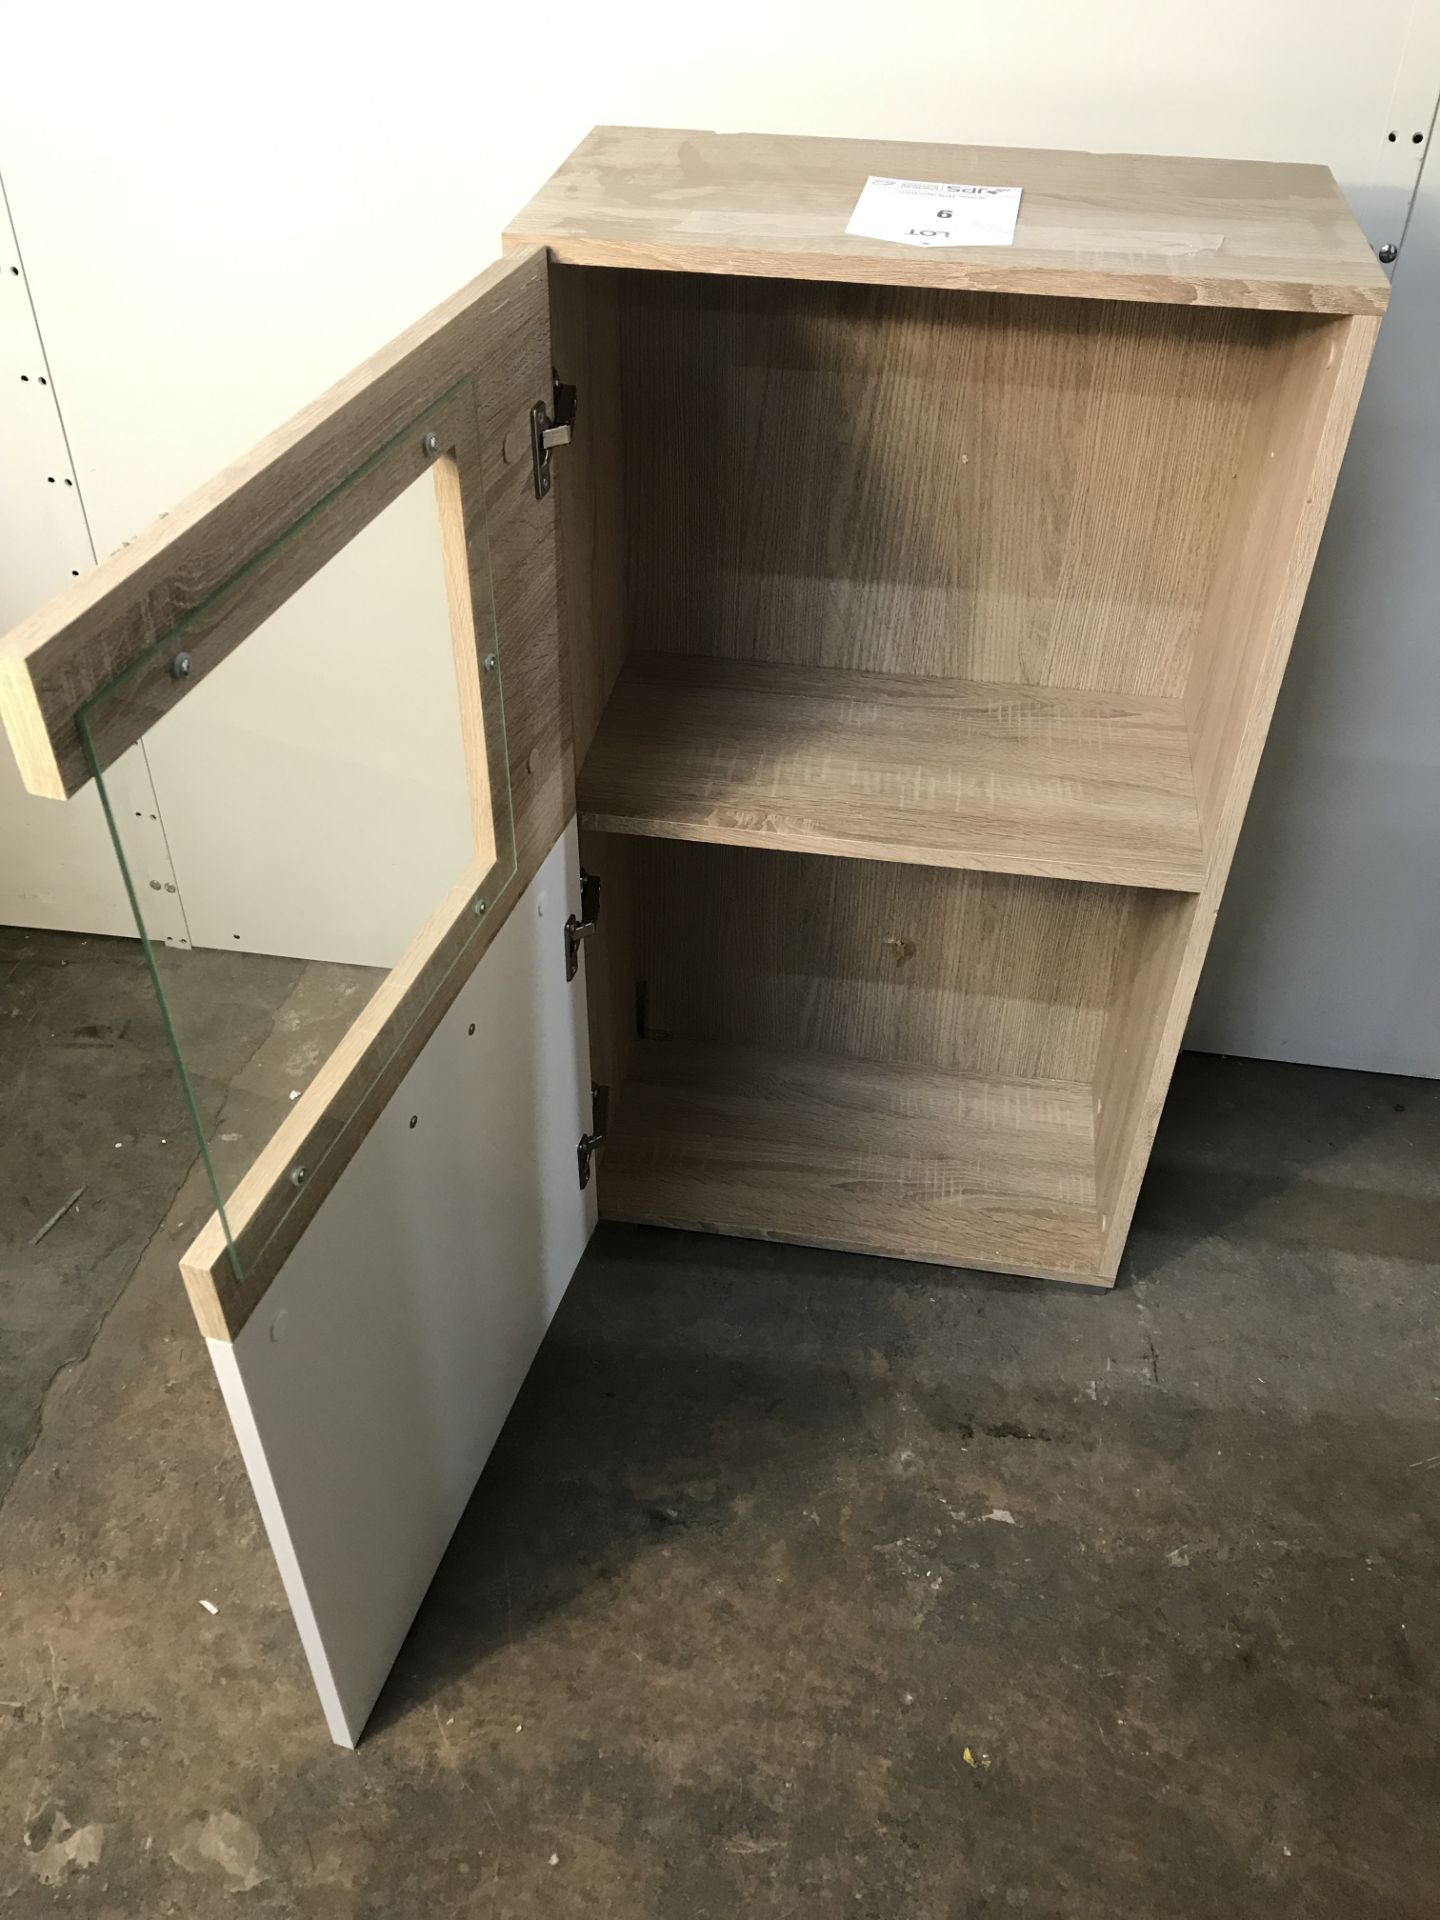 2 Shelf Cabinet with Glass Door - Image 2 of 5